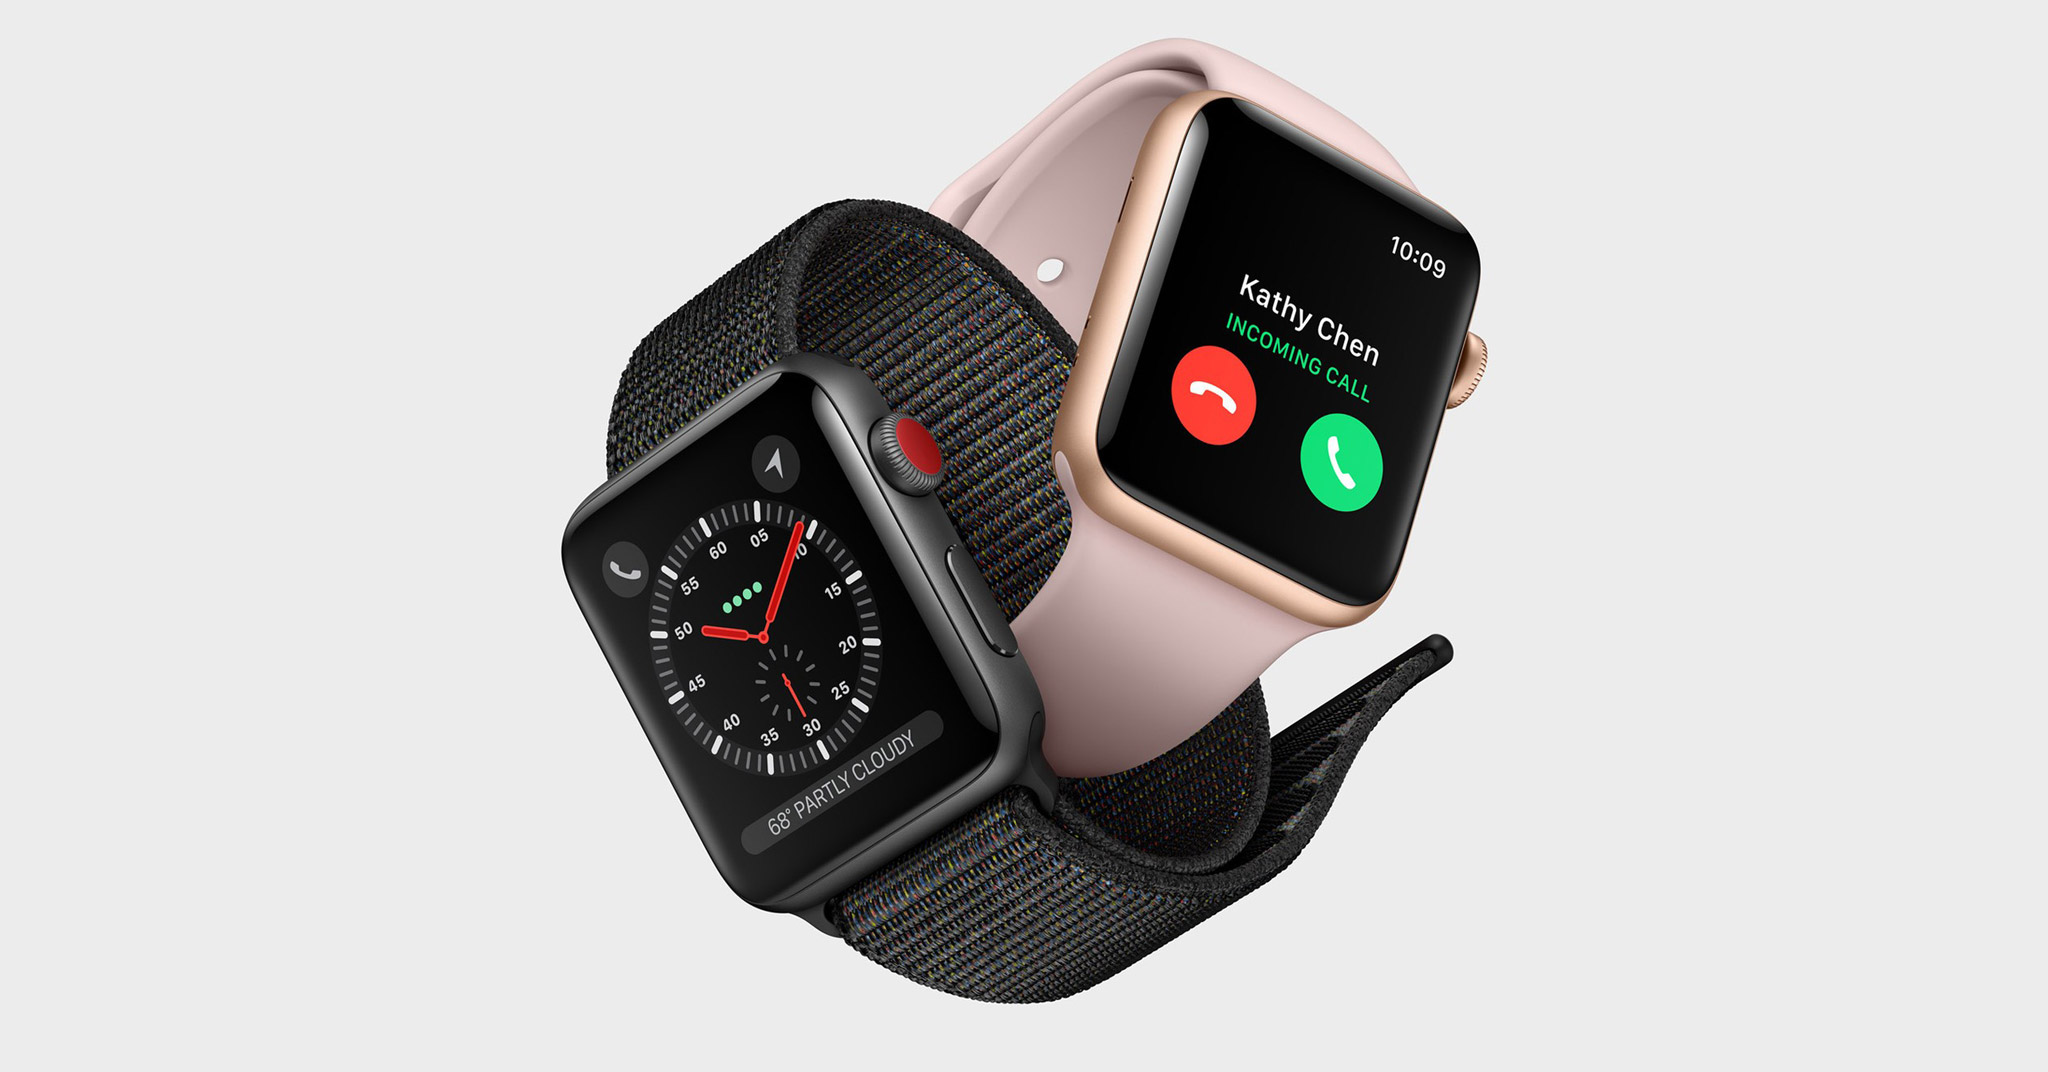 Lộ diện thông tin về Apple Watch Series 4 trong iOS 12 Beta, tháng 9 sẽ có hàng?